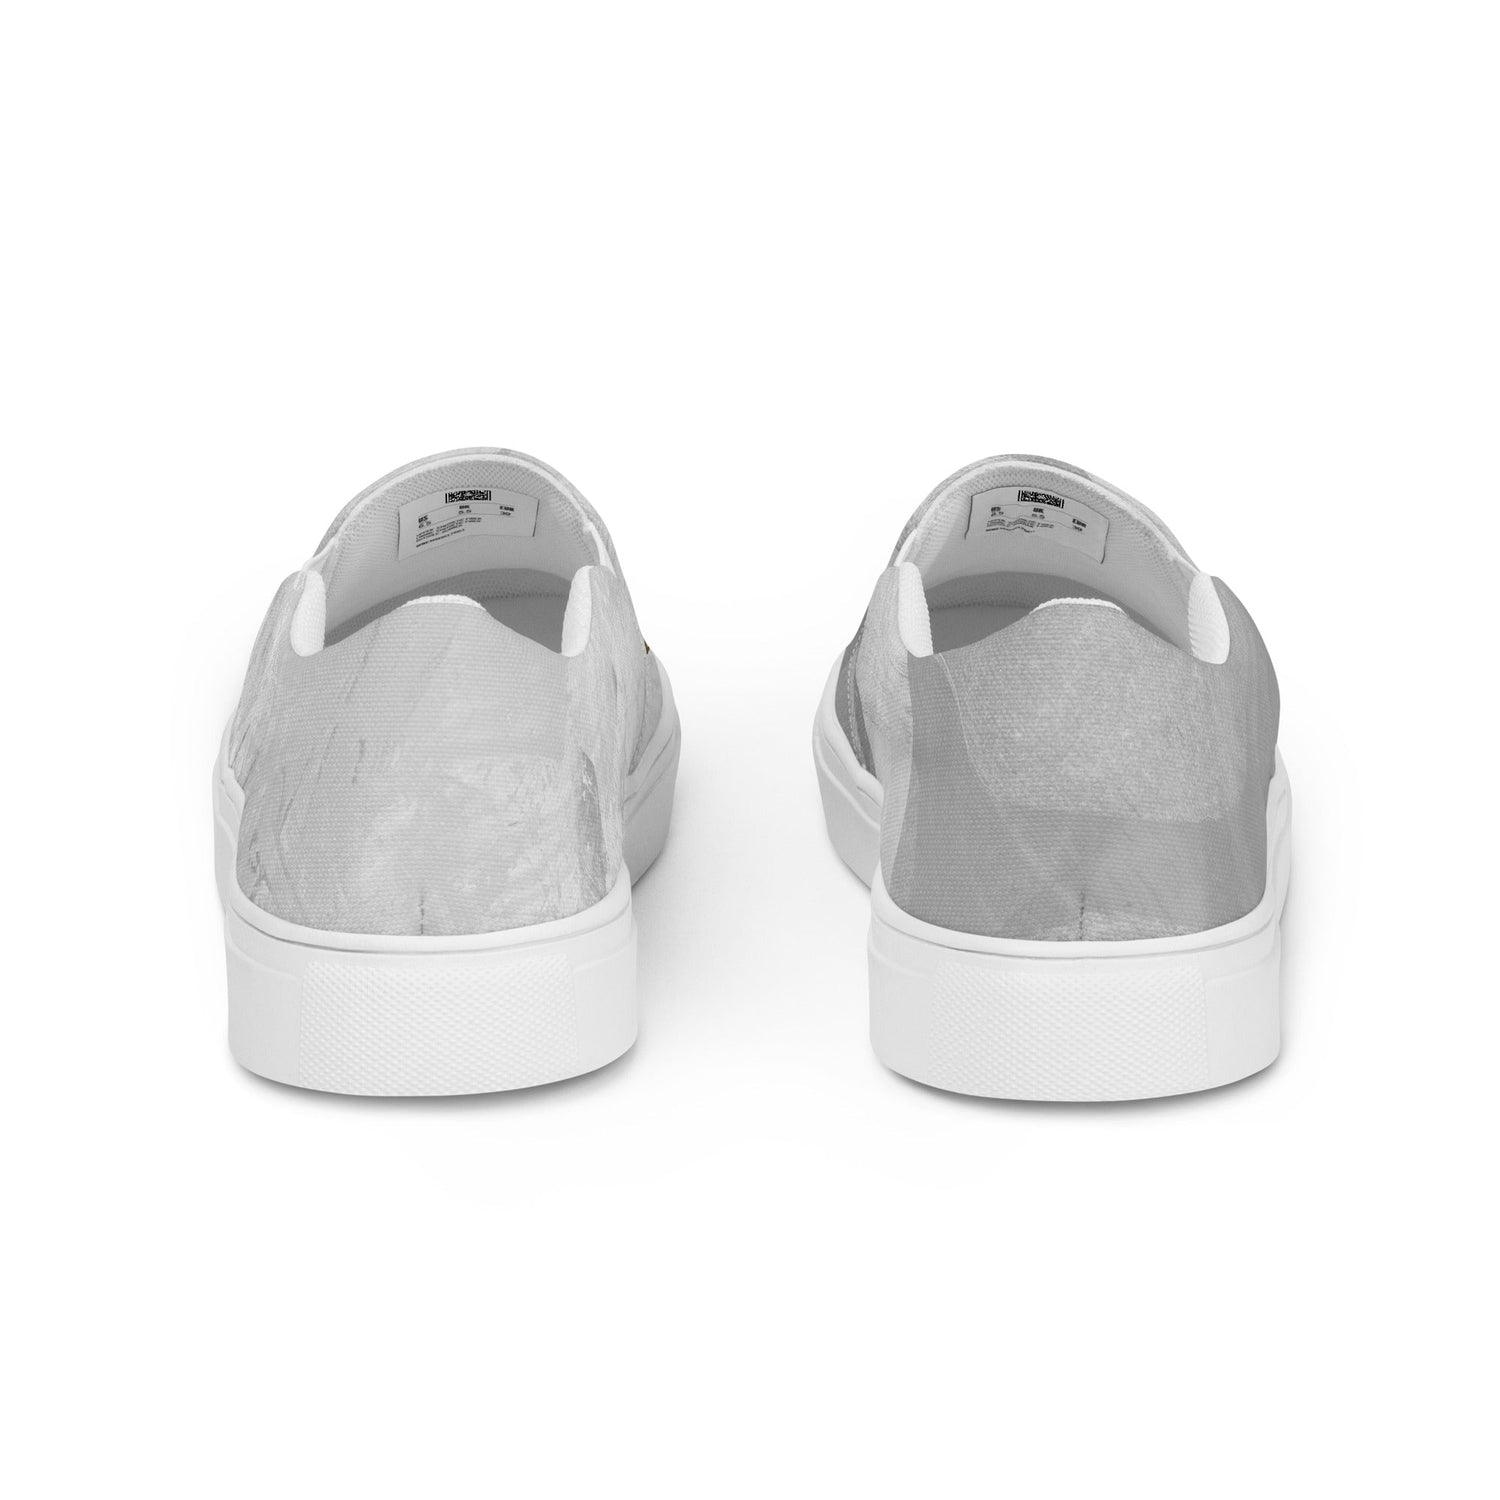 klasneakers Men’s slip-on canvas shoes - ATM